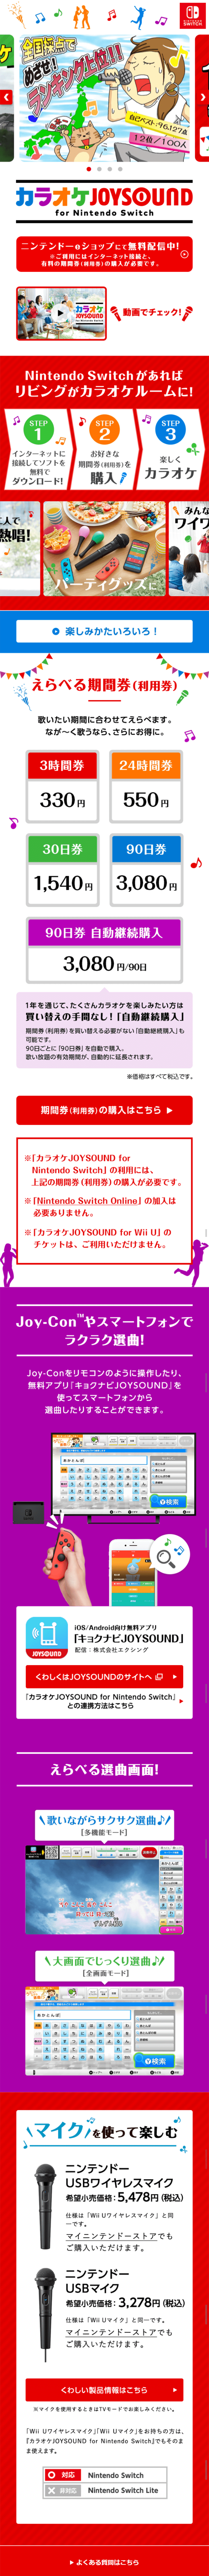 カラオケJOYSOUND for Nintendo Switch_sp_1